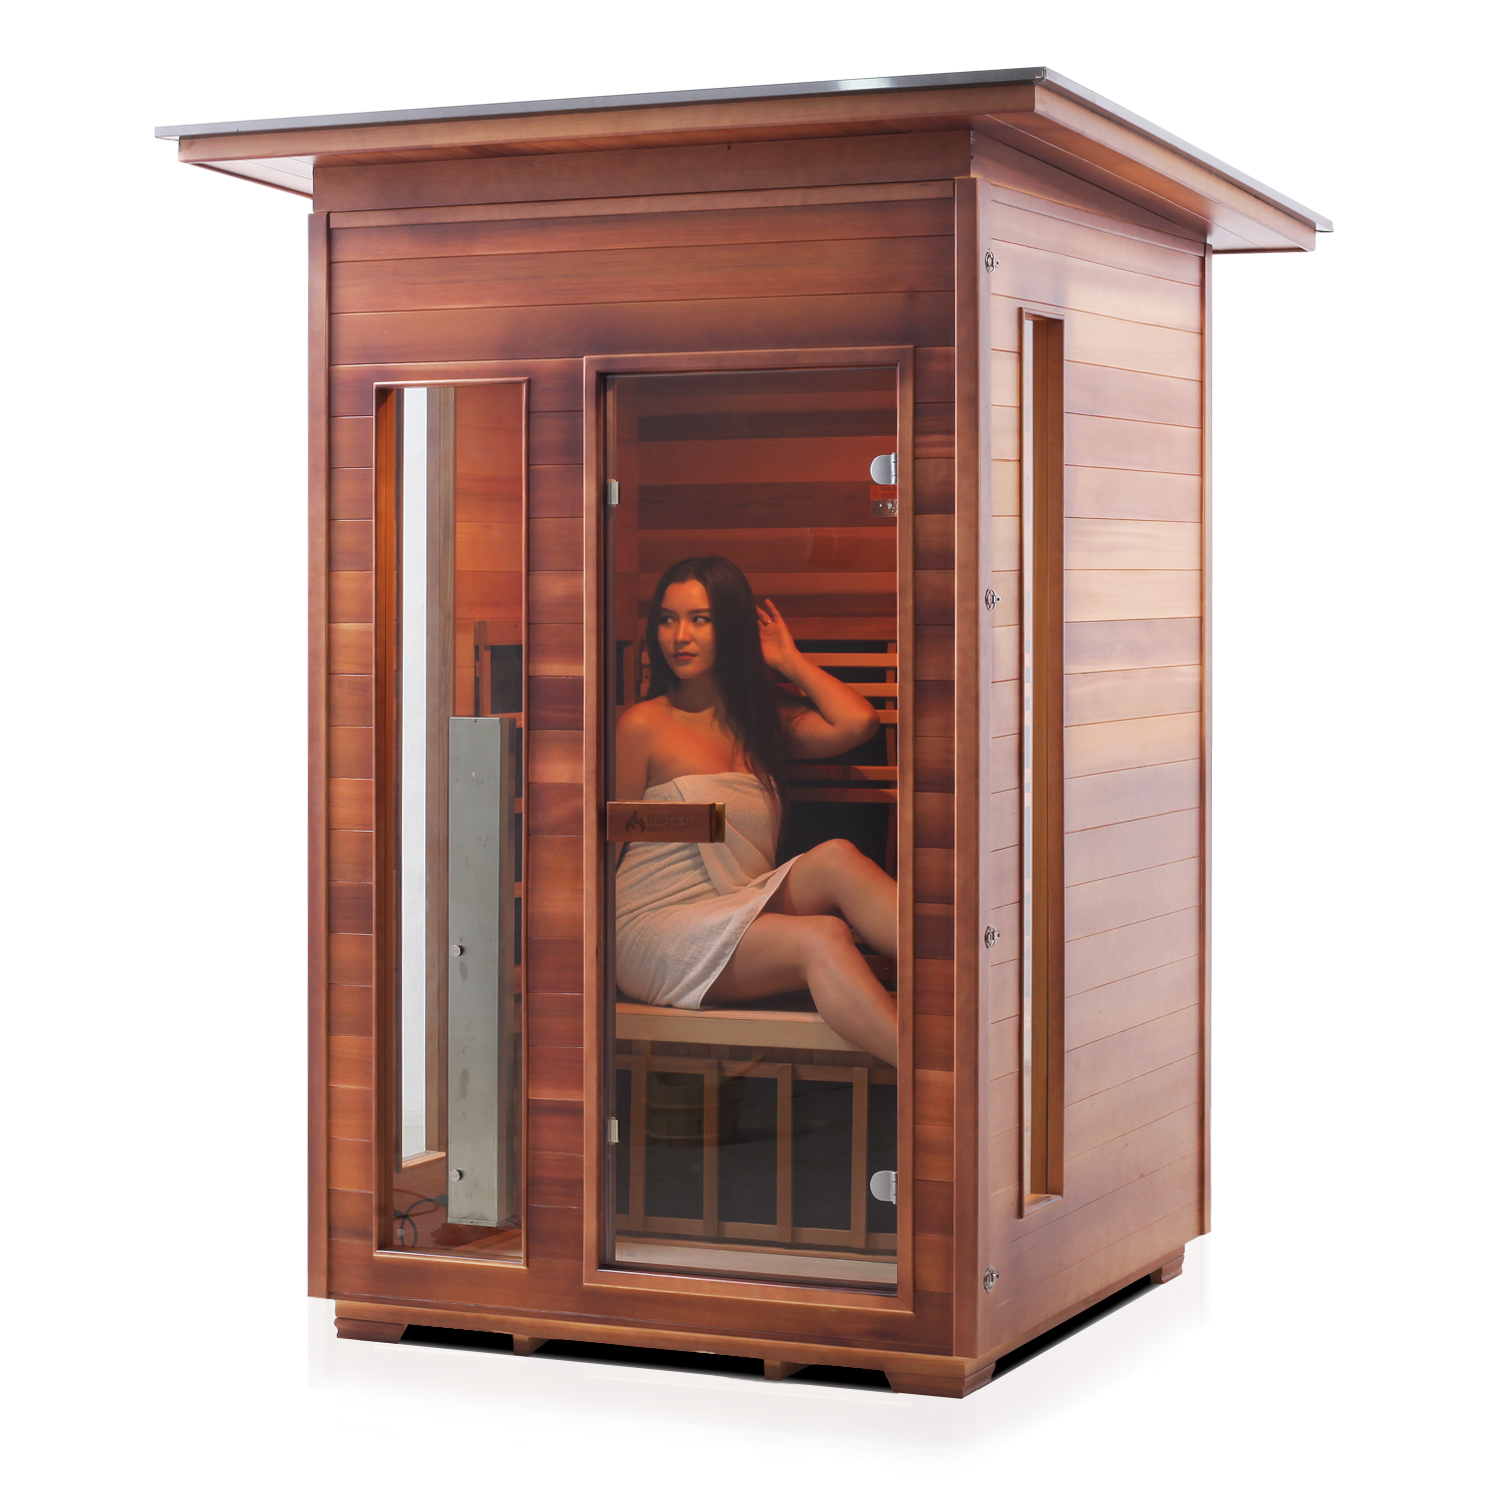 2 person home sauna